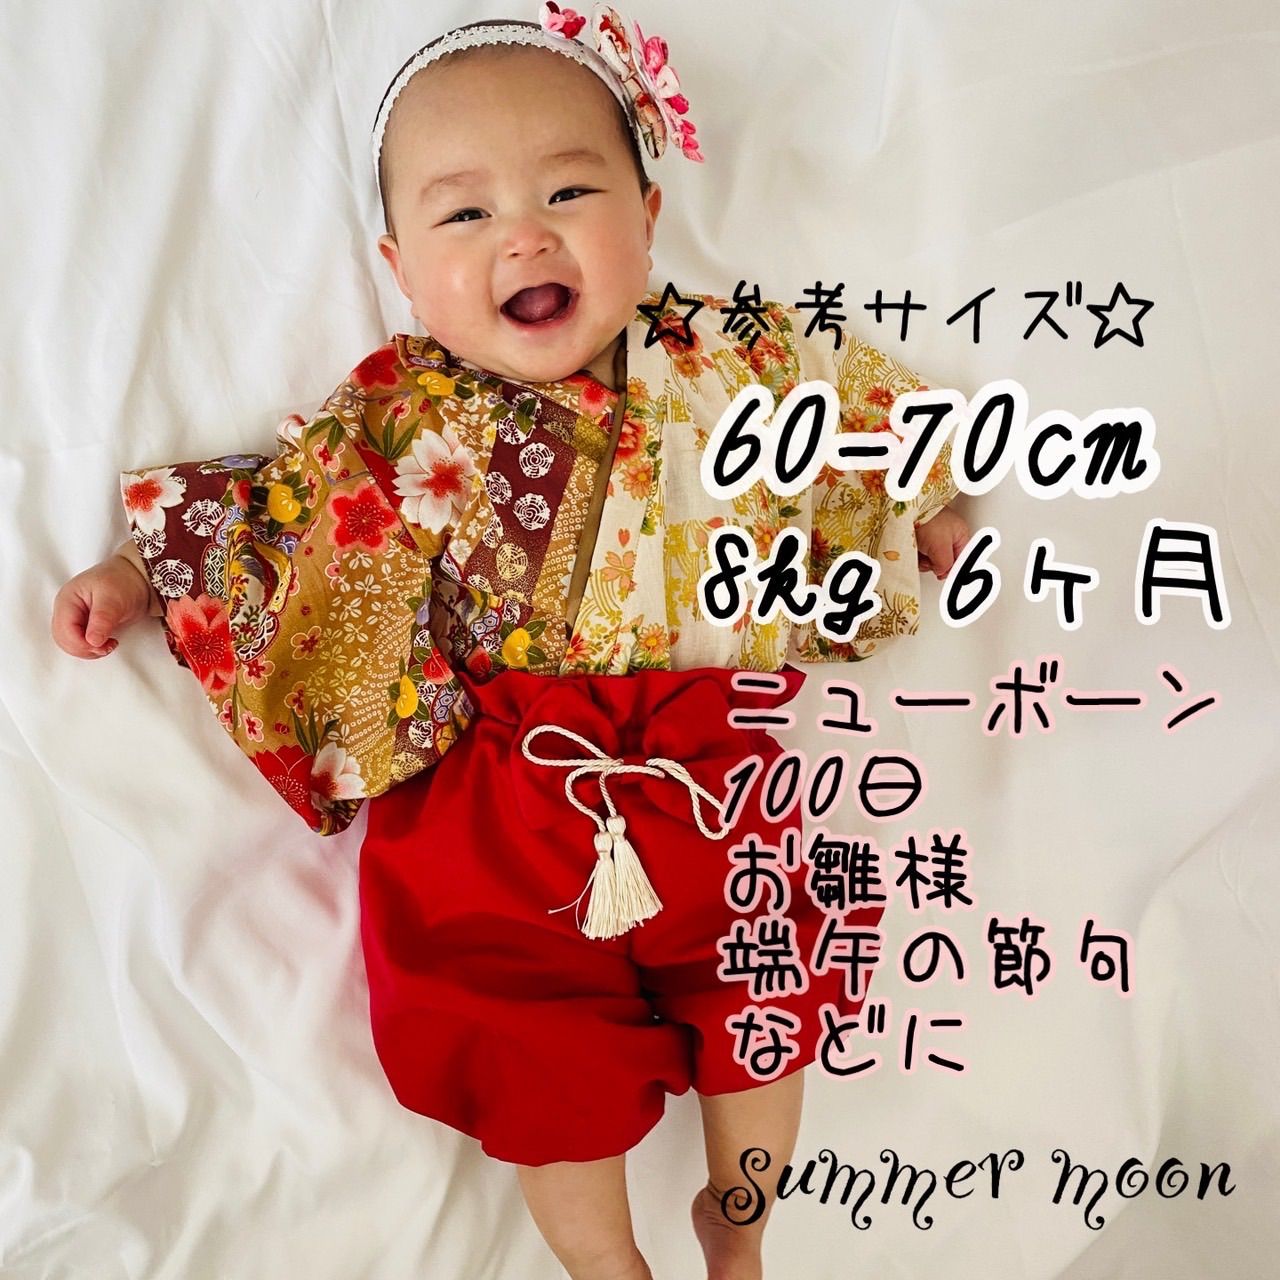 ベビー袴 ハンドメイド 60-80cm - ファッション雑貨